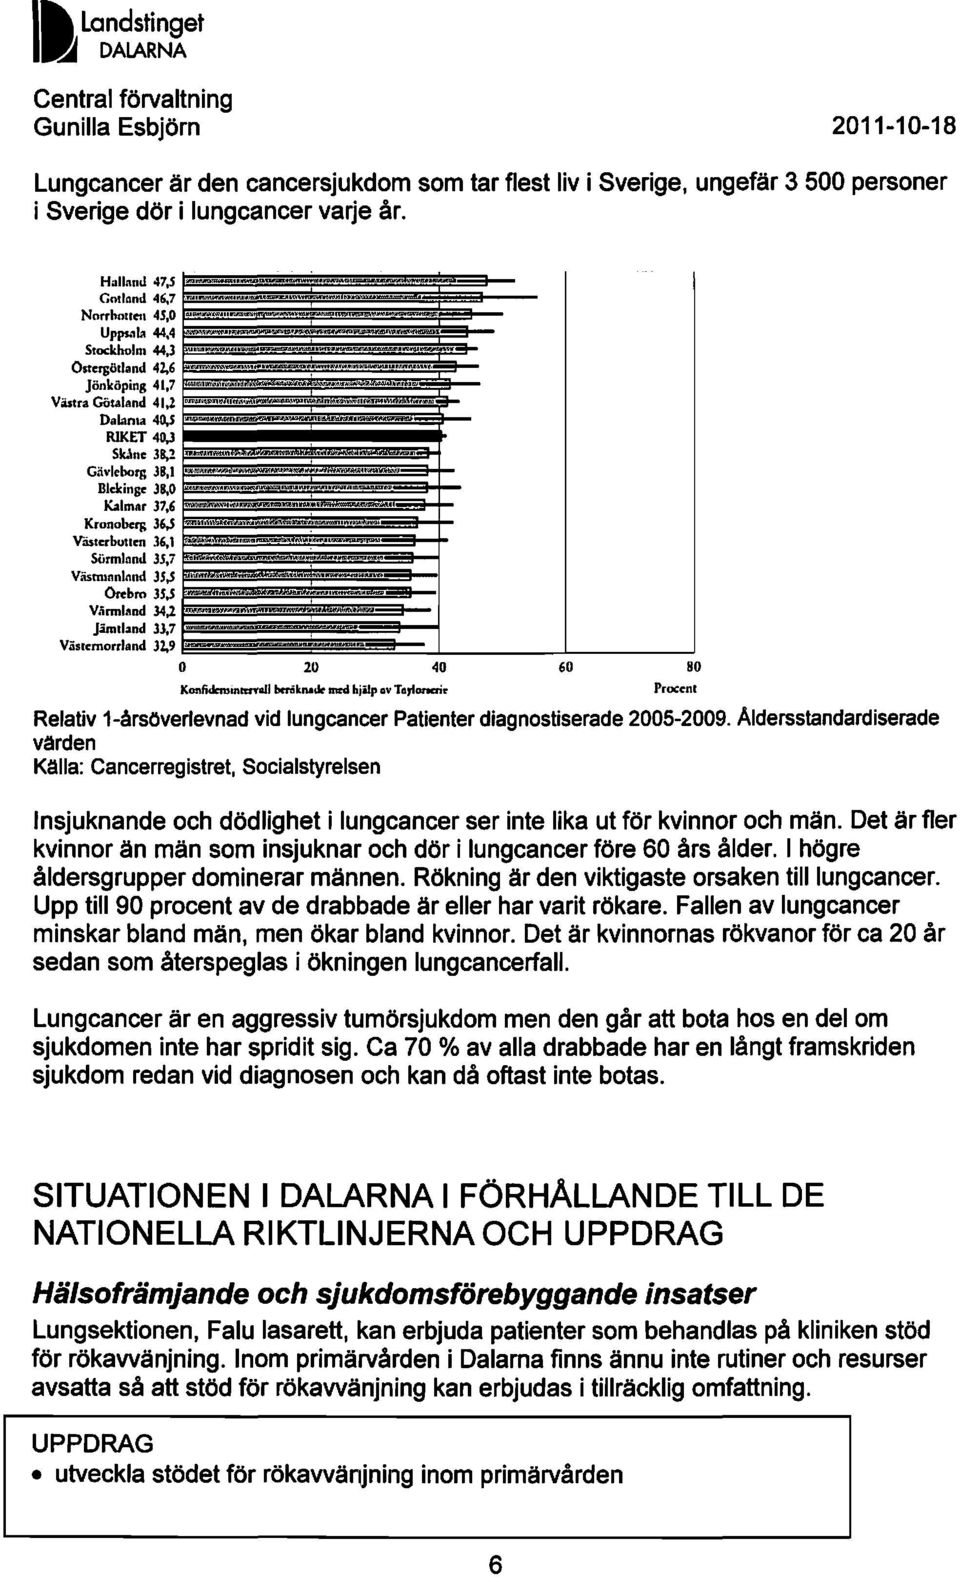 irmlAnd 34,2- Jämtland 33,7 Viisrernorrland 32,9 ~m O ~ ~ KOllfidominlUTall bcriknadrmodhjilp av Tarlonai. 60 80 Procent Relativ 1-årsöverlevnad vid lungcancer Patienter diagnostiserade 2005-2009.